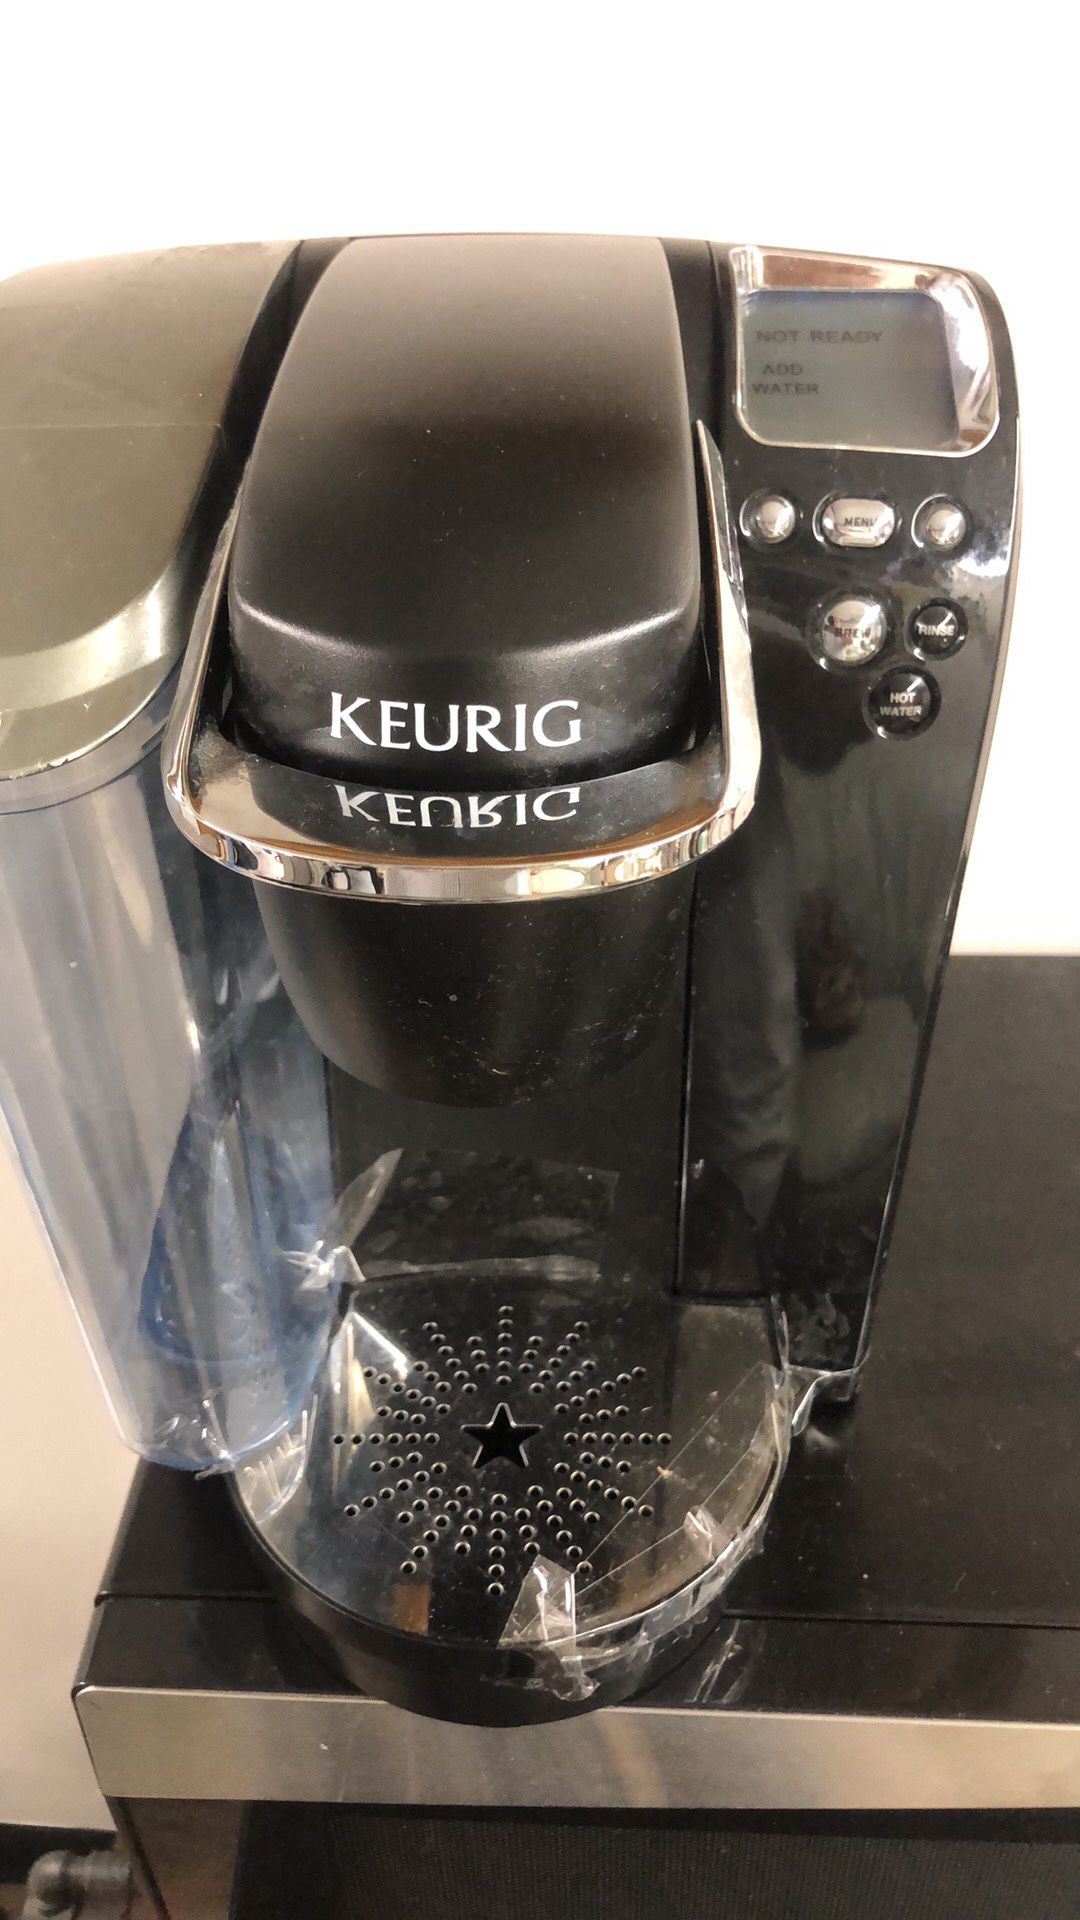 KEURIG COFFEE MAKER WORKS GREAT LIKE NEW